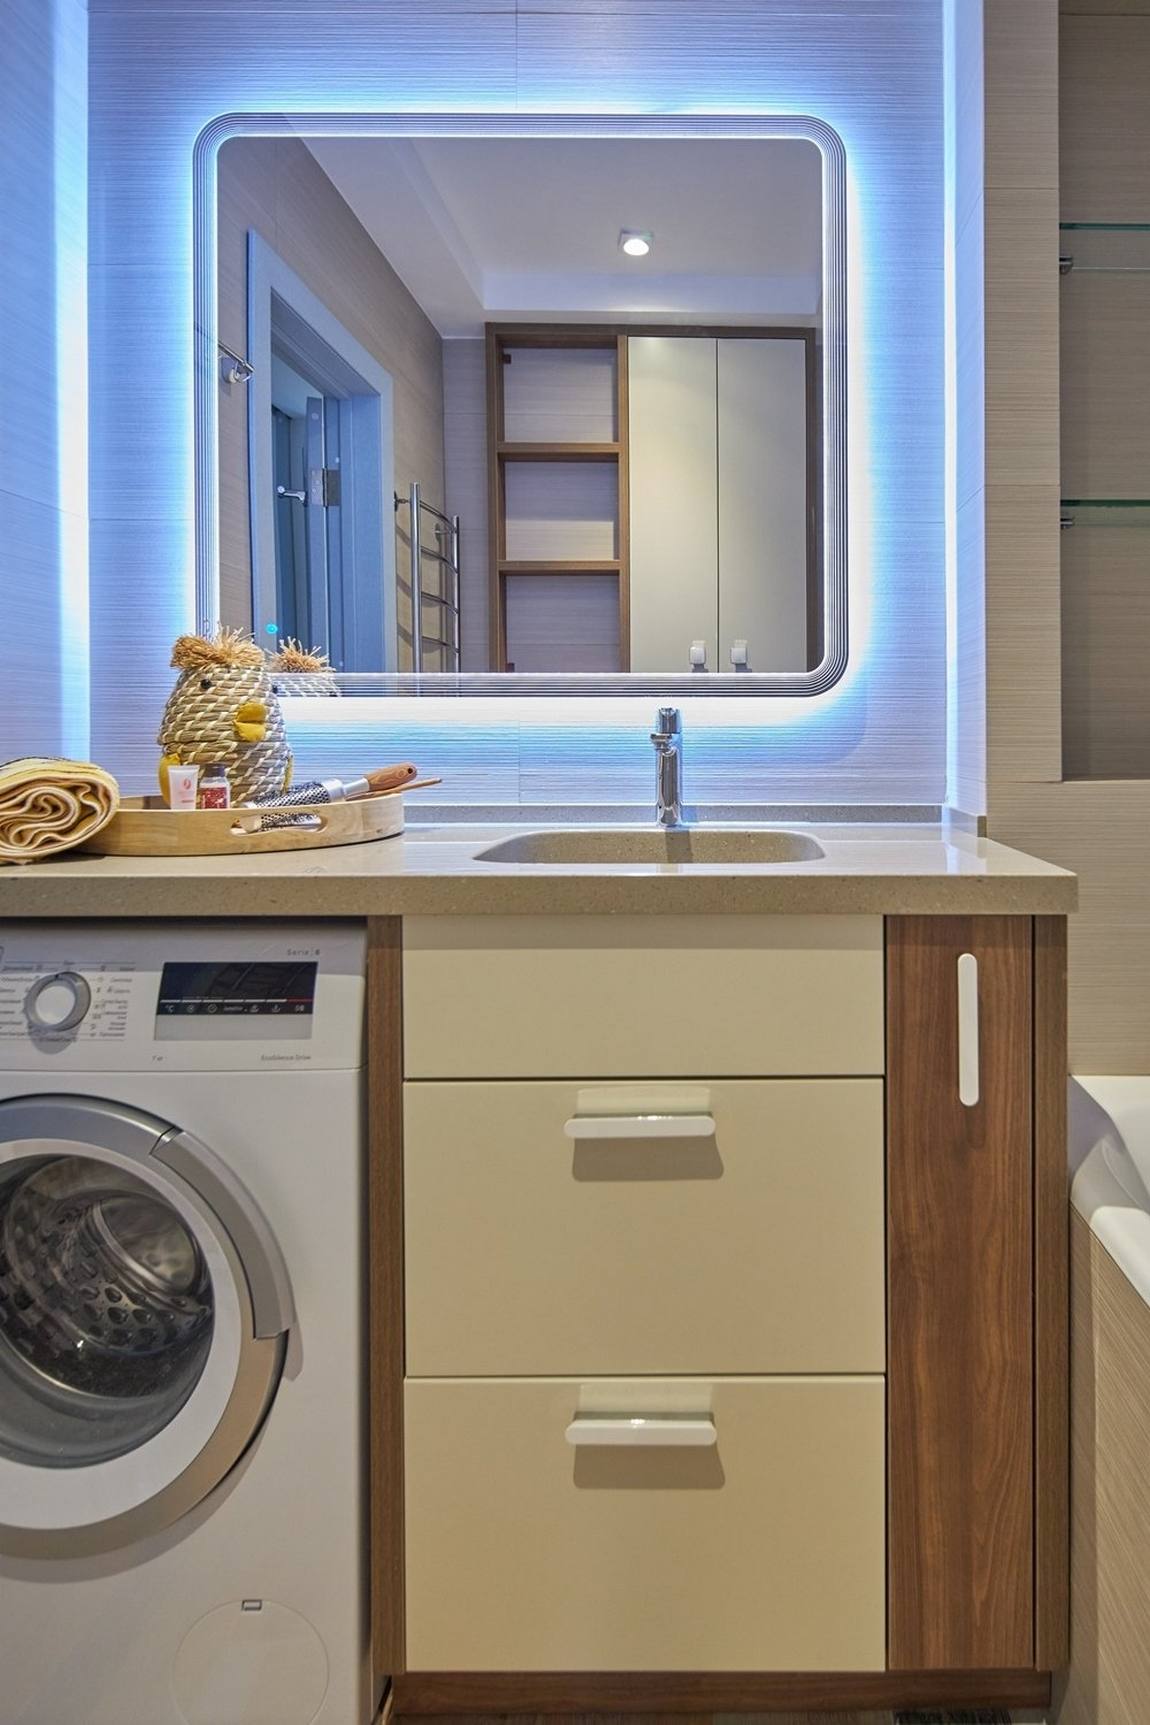 Phòng tắm với máy giặt bố trí gọn gàng bên dưới tủ lưu trữ kết hợp bồn rửa. Trên tường là tấm gương hình vuông với các góc cạnh bo tròn, xung quanh viền hệ thống đèn LED bắt mắt.